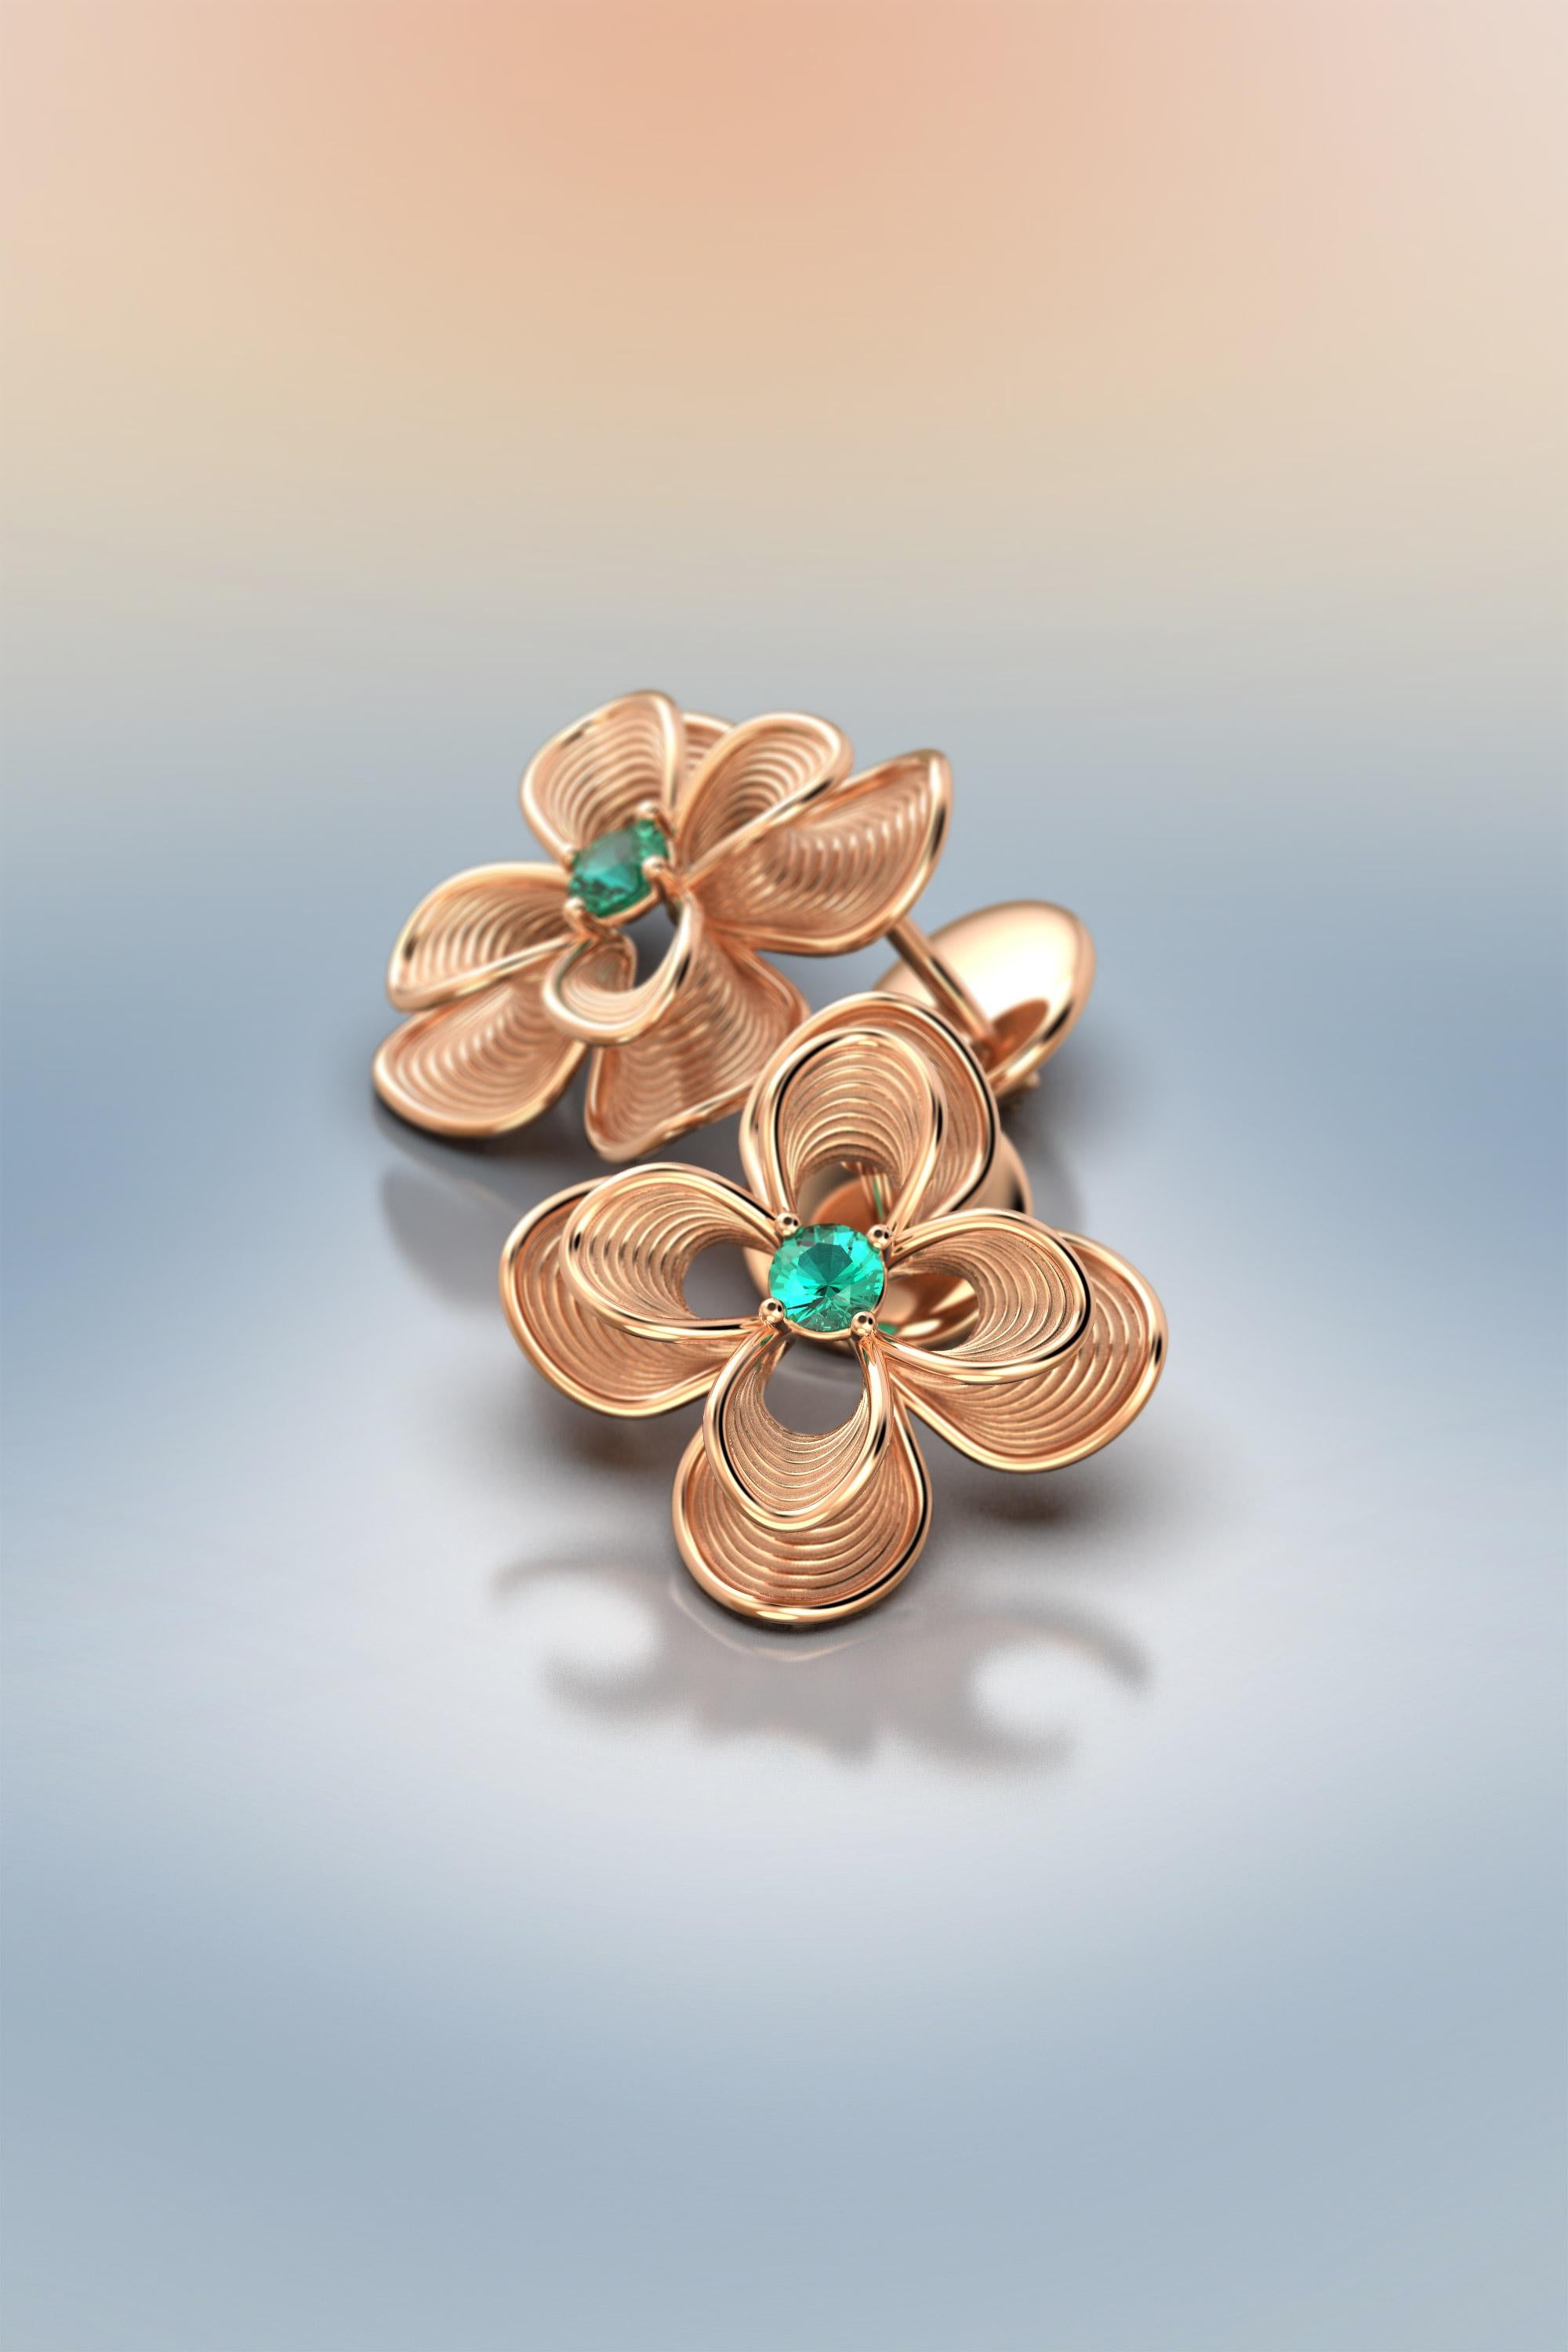 Women's Emerald Stud Earrings in 14k Gold | Italian Jewelry by Oltremare Gioielli For Sale